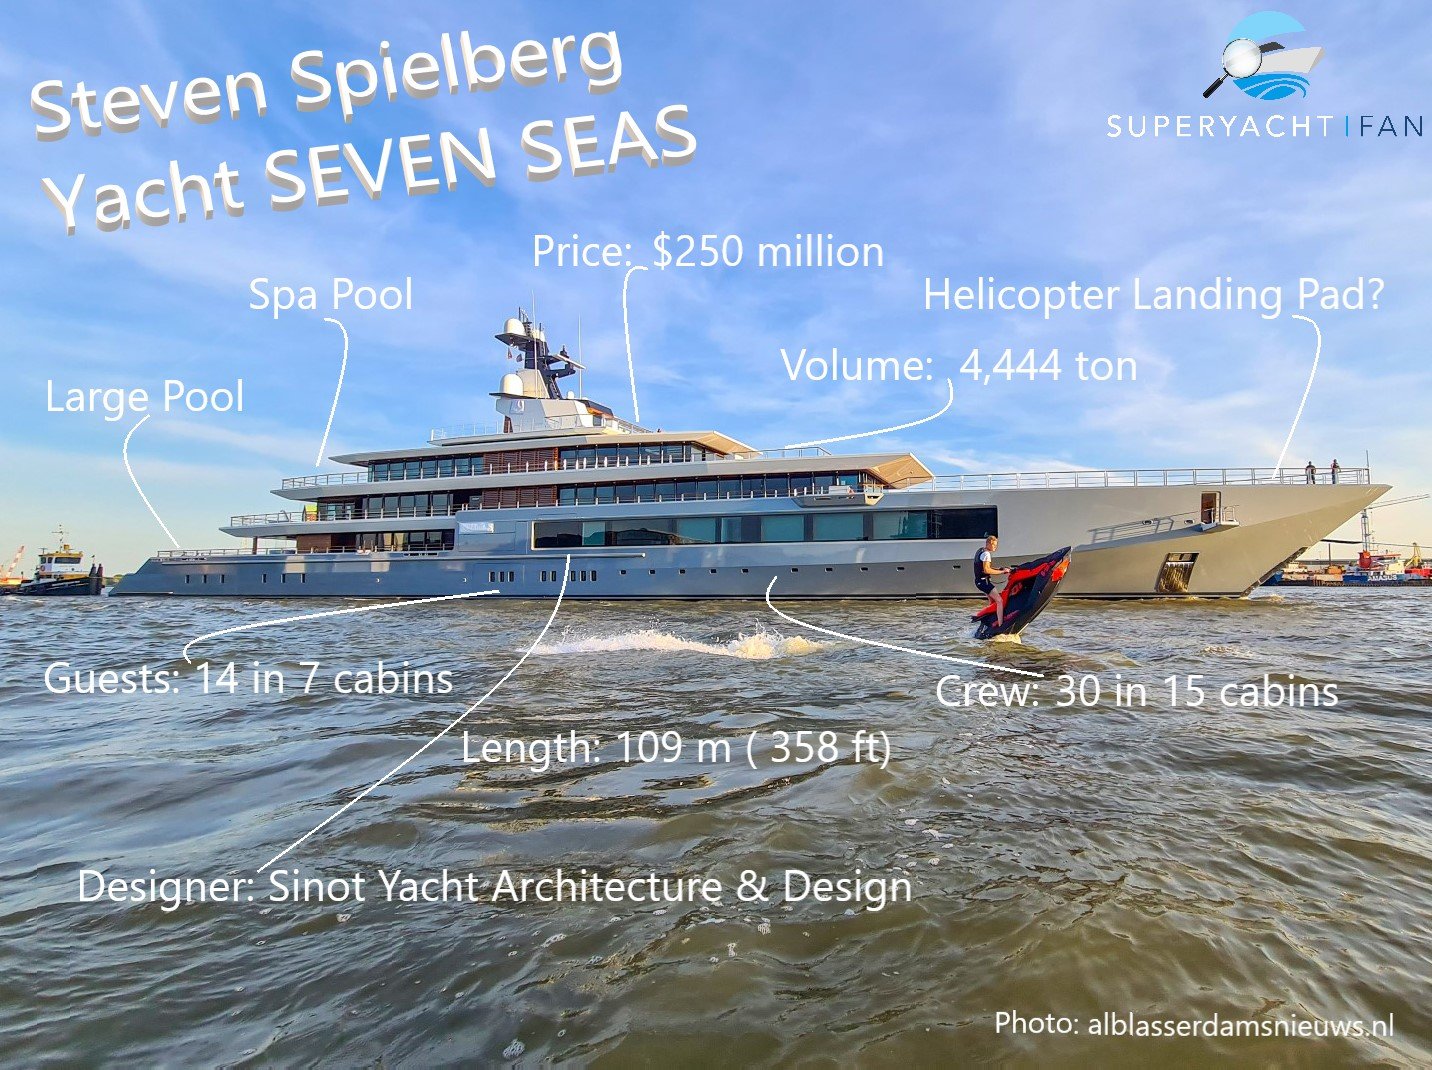 ستيفن سبيلبرغ - يخت سفن سيز إنفوجرافيك